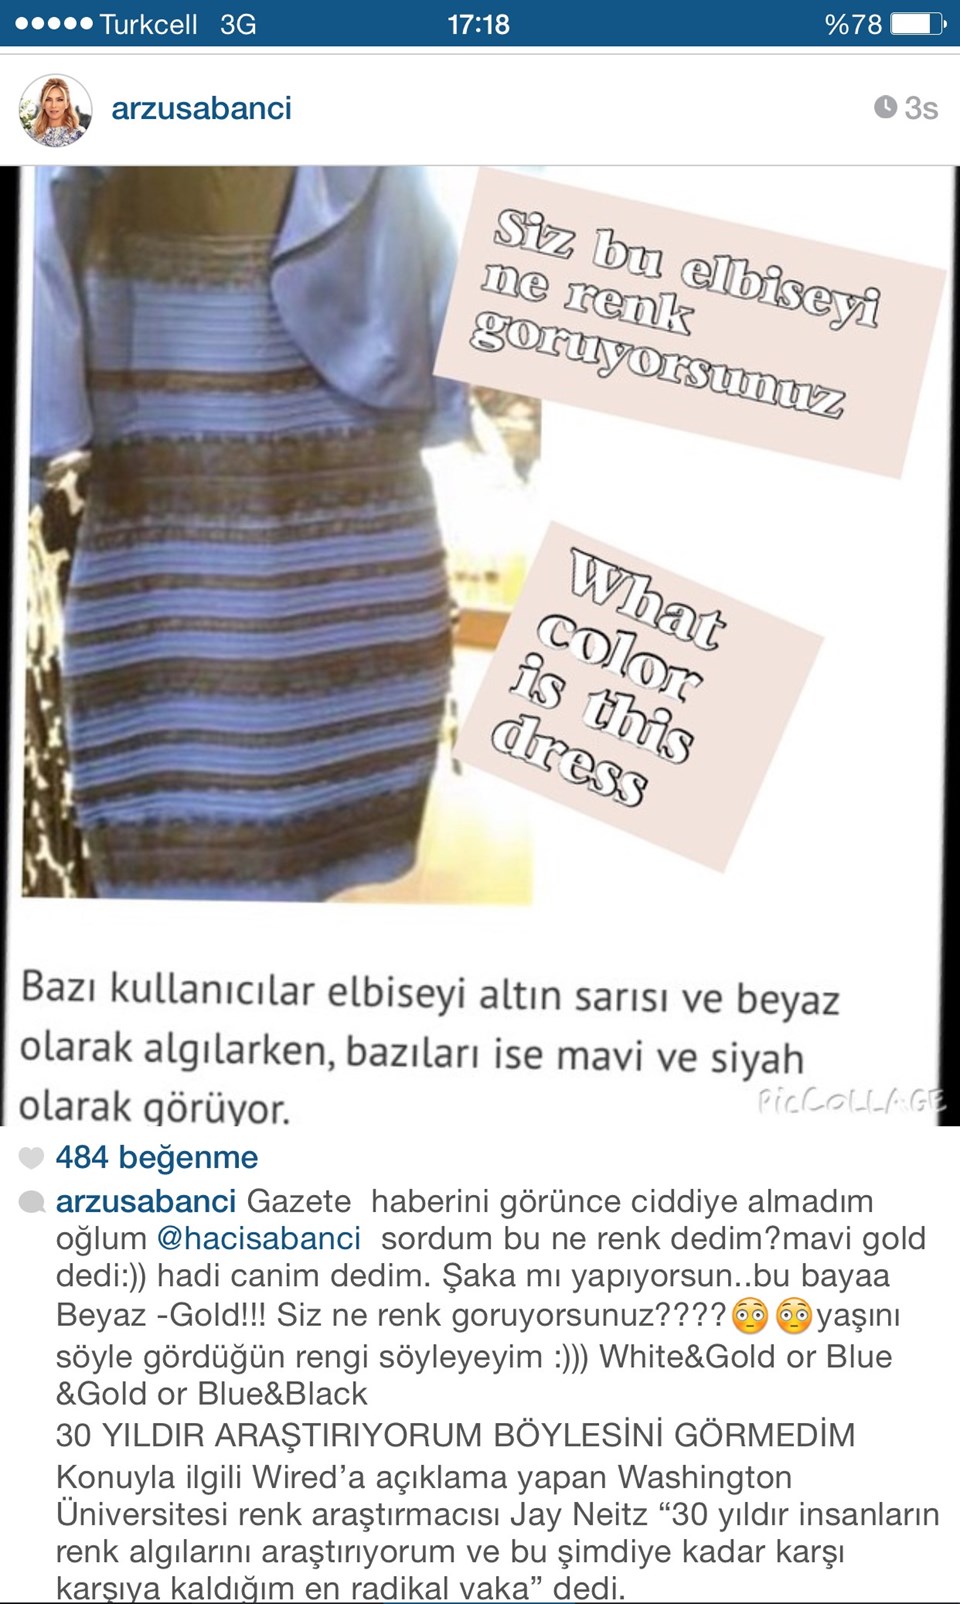 Sosyal medyada paylaşılan elbise dünyayı ikiye böldü - 3